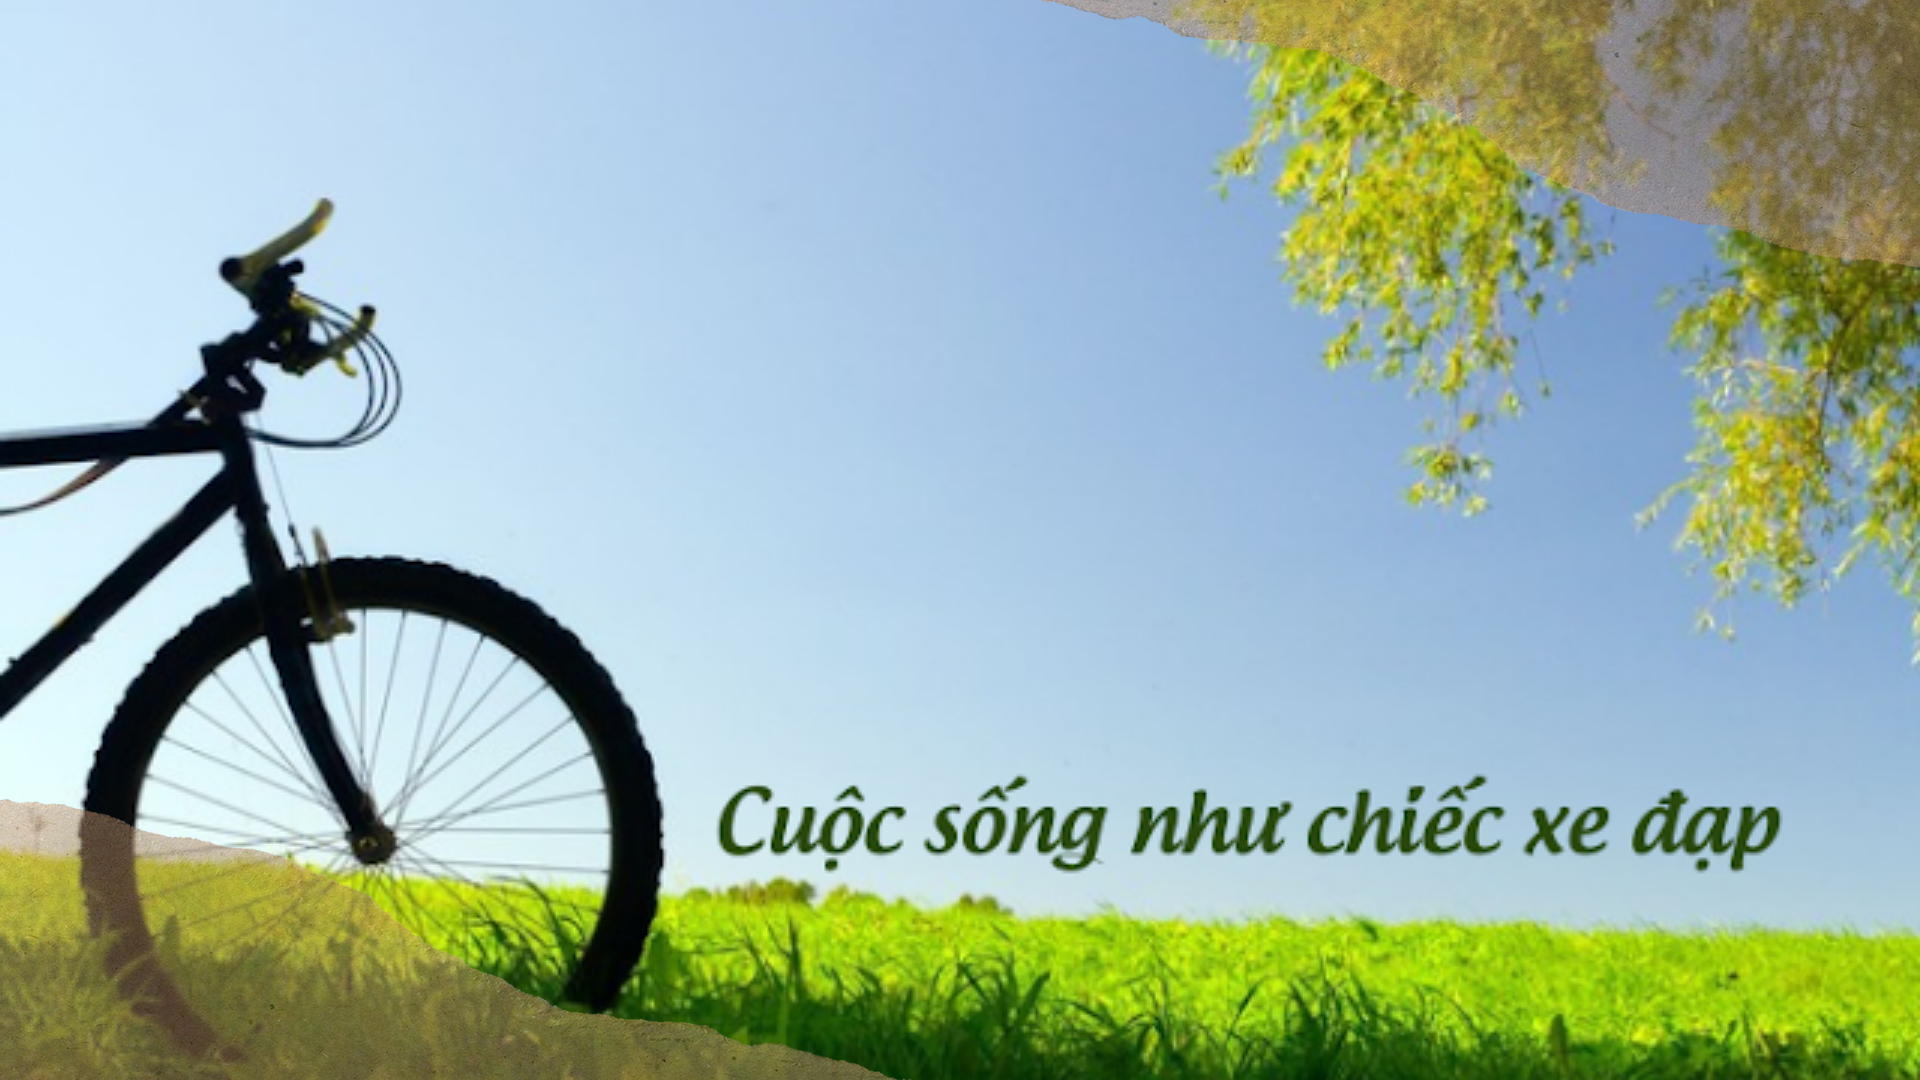 Cuộc sống như chiếc xe đạp